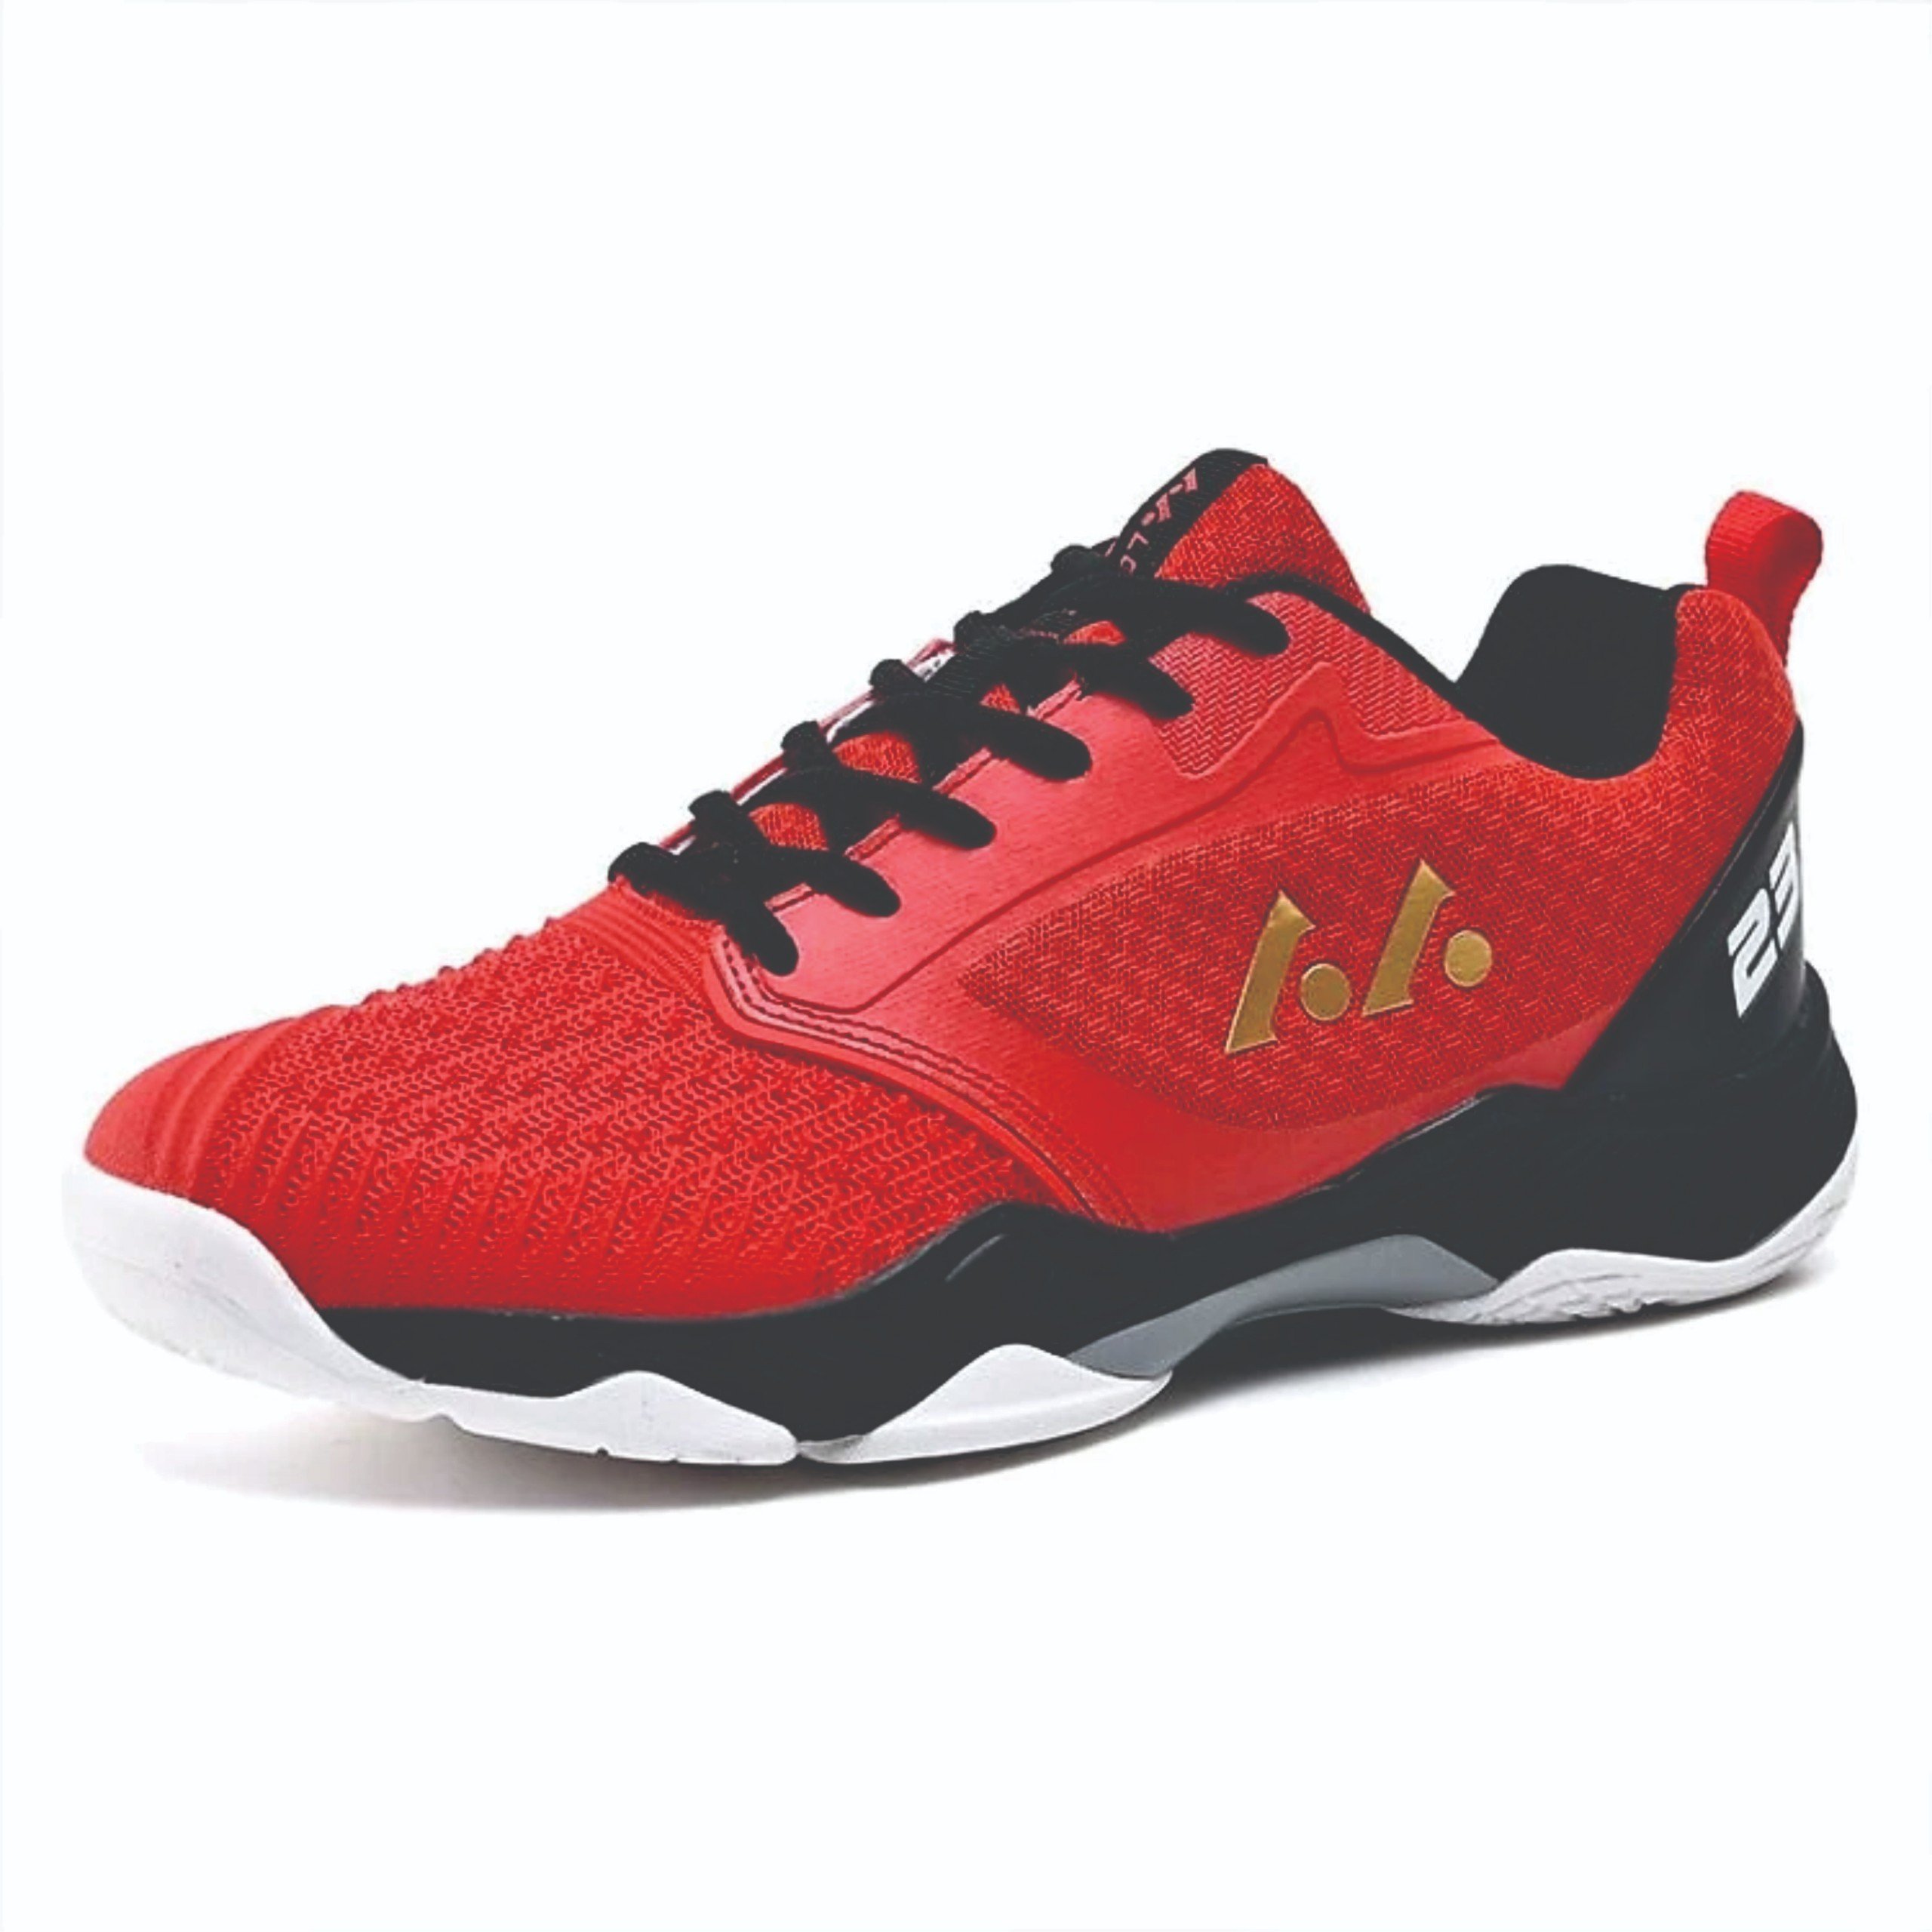 Giày bóng chuyền Lefus L023 - Đỏ